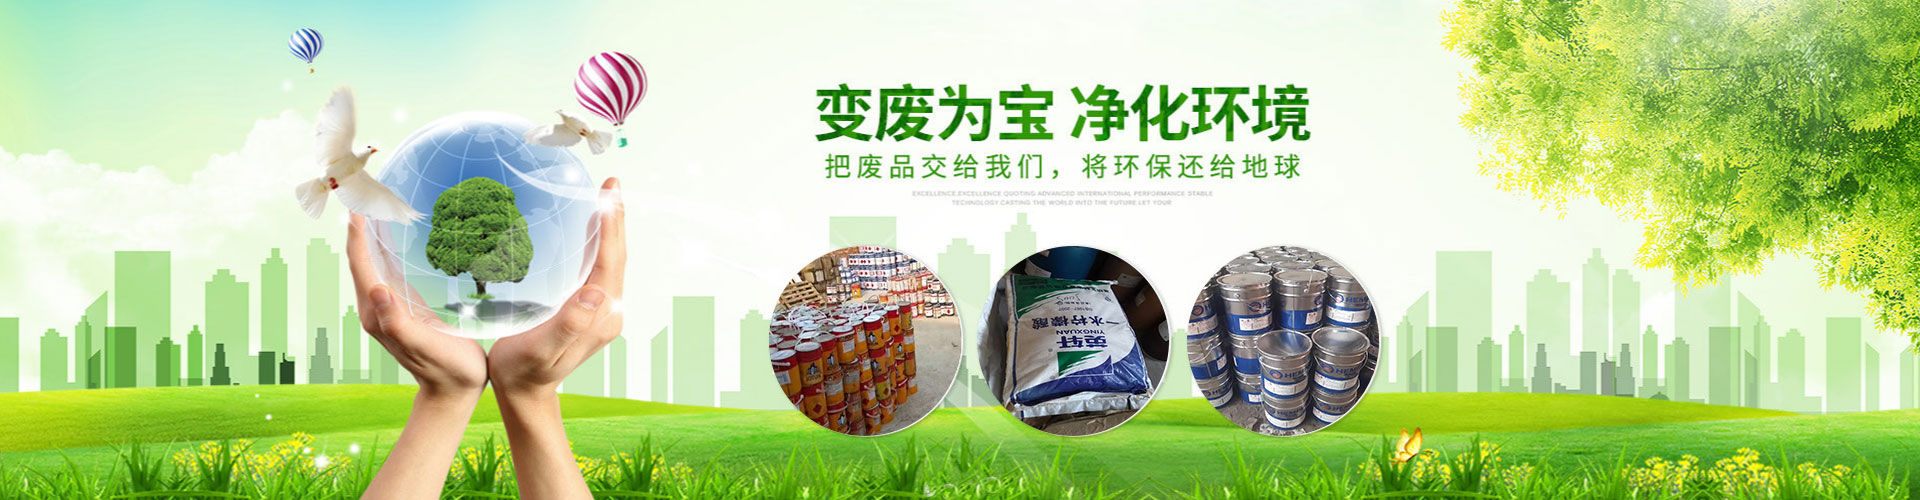 色酚回收、广州本地色酚回收、广州、广州色酚回收